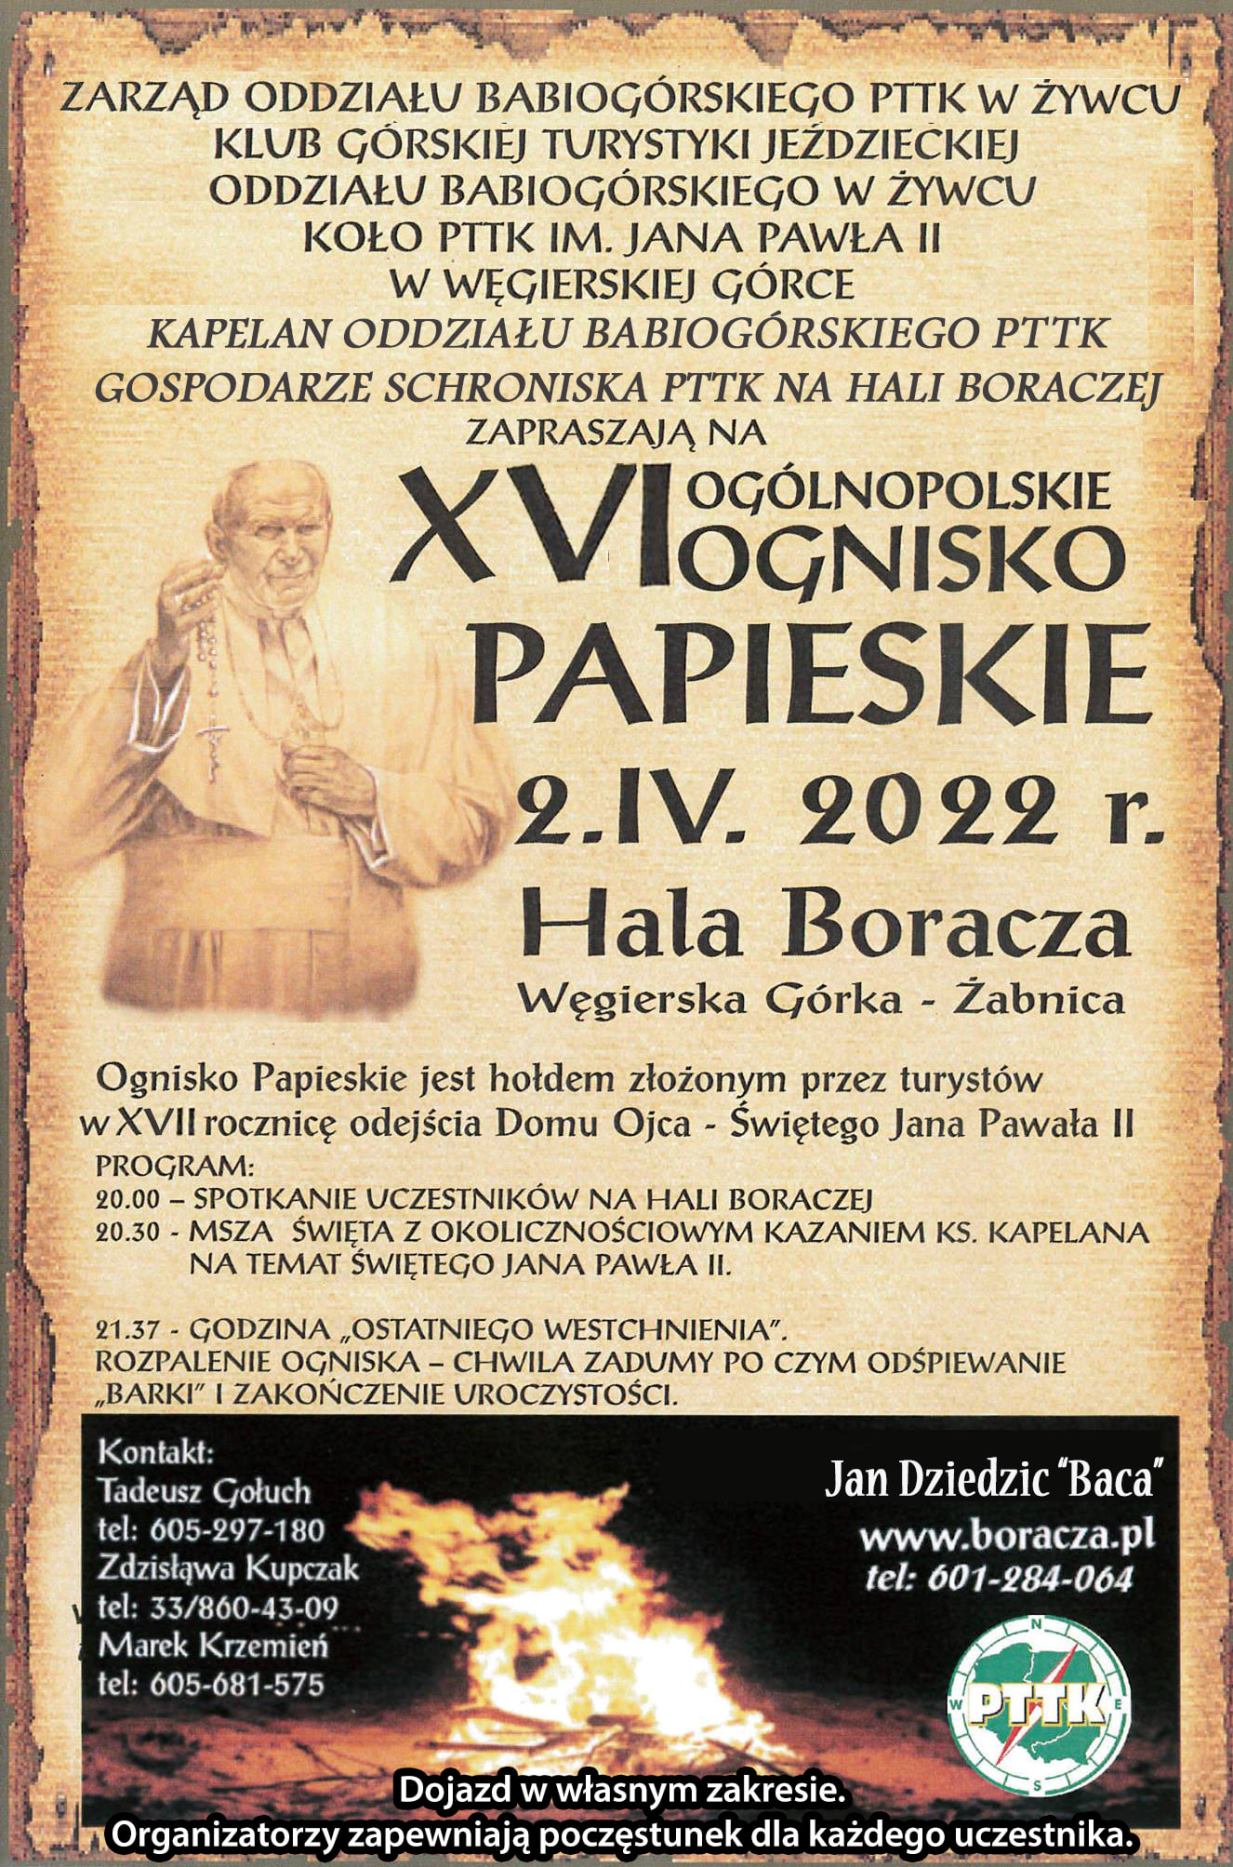 Ognisko Papieskie 2022 zaproszenie